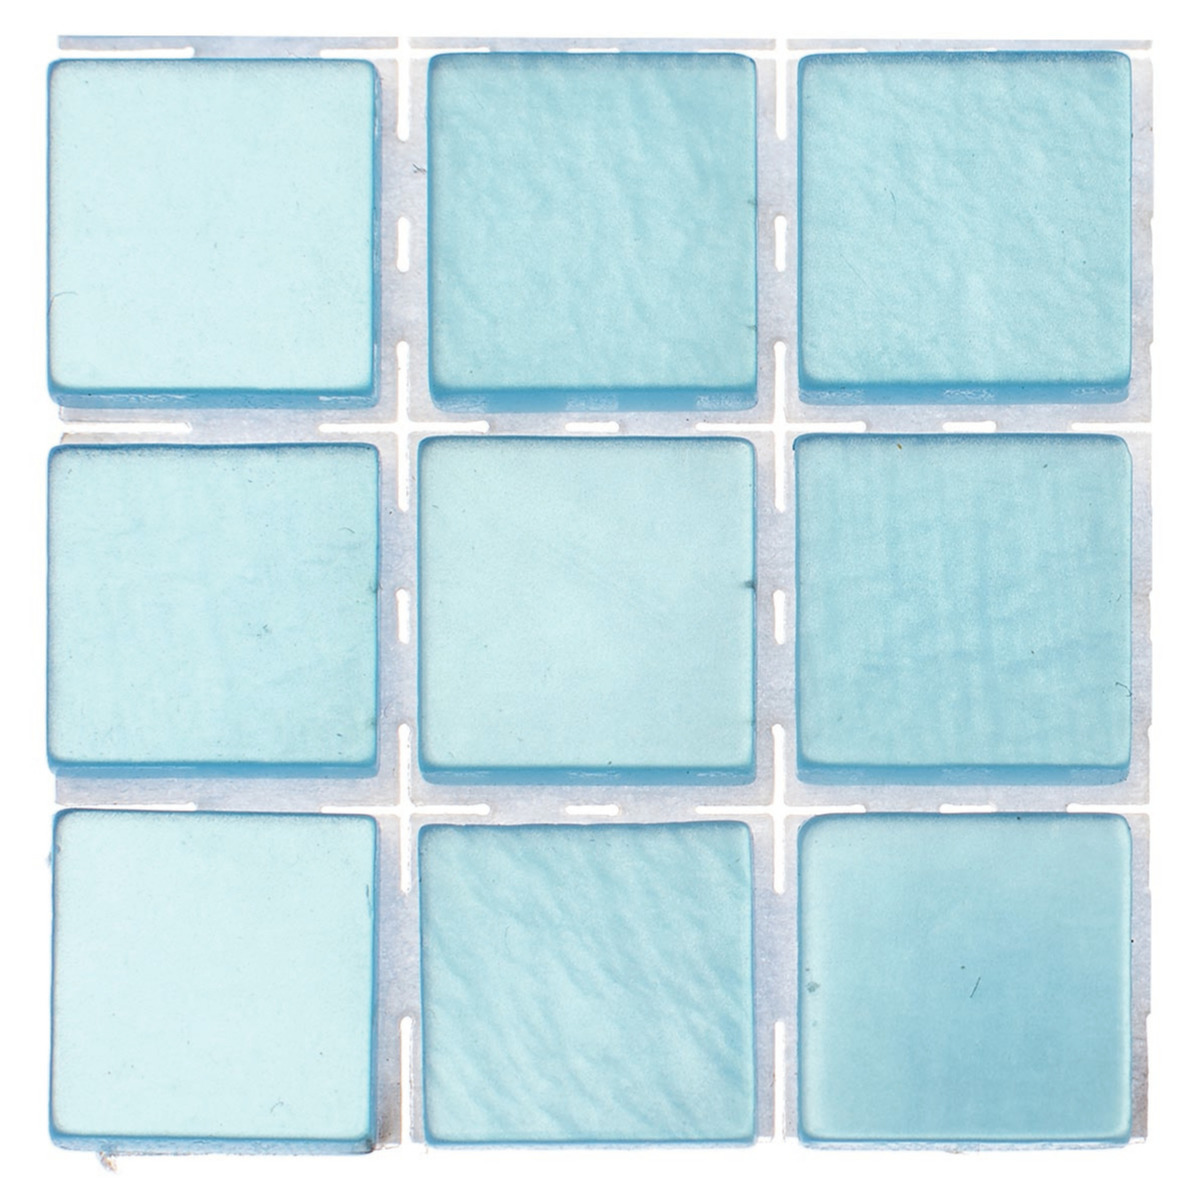 189x stuks mozaieken maken steentjes-tegels kleur lichtblauw 10 x 10 x 2 mm